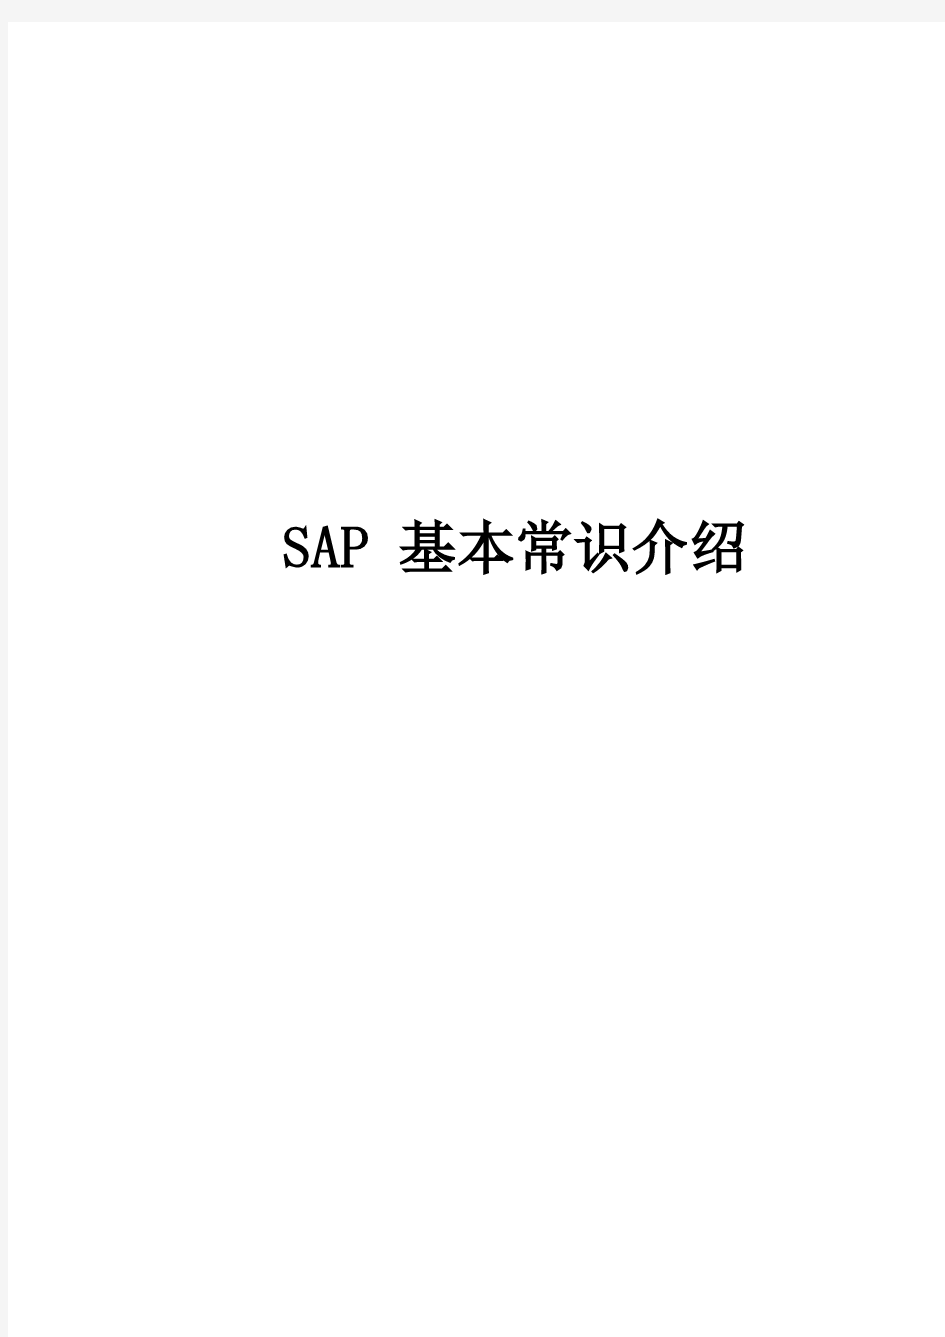 SAP基本常识介绍